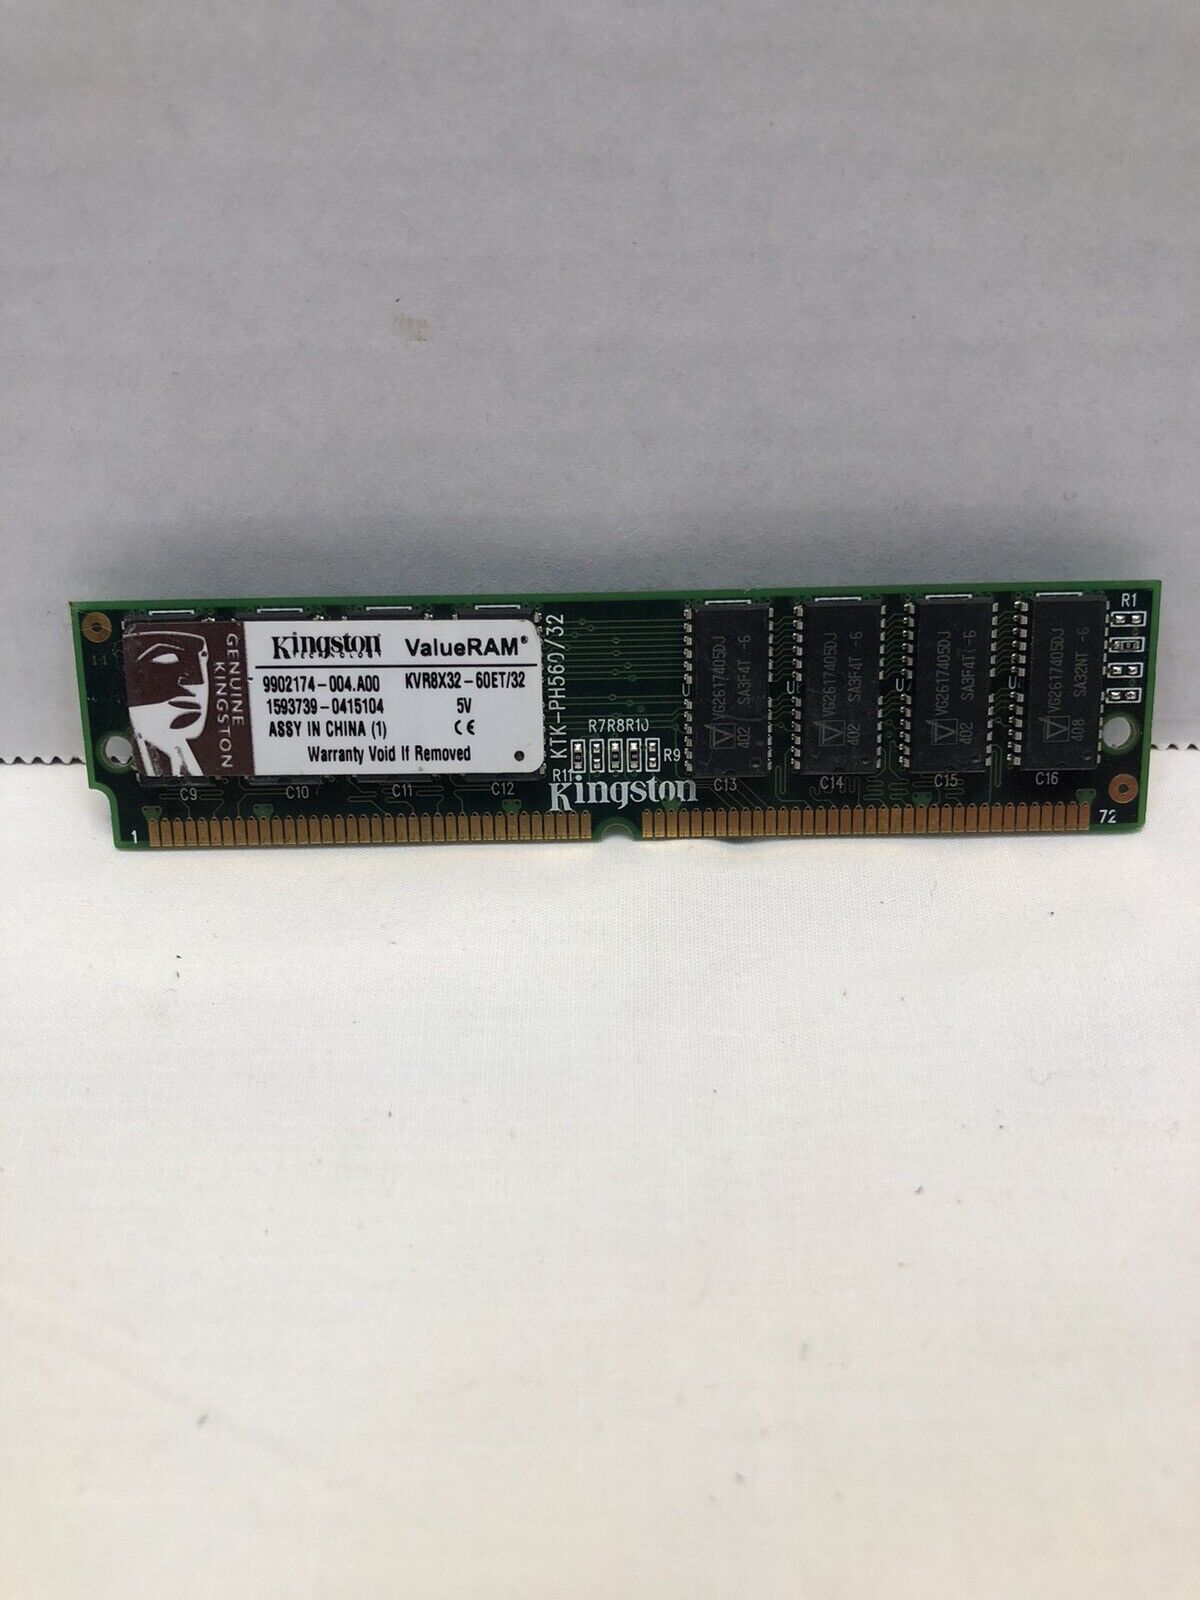 Kingston ValueRAM KVR8X32-60ET/32 Desktop Memory